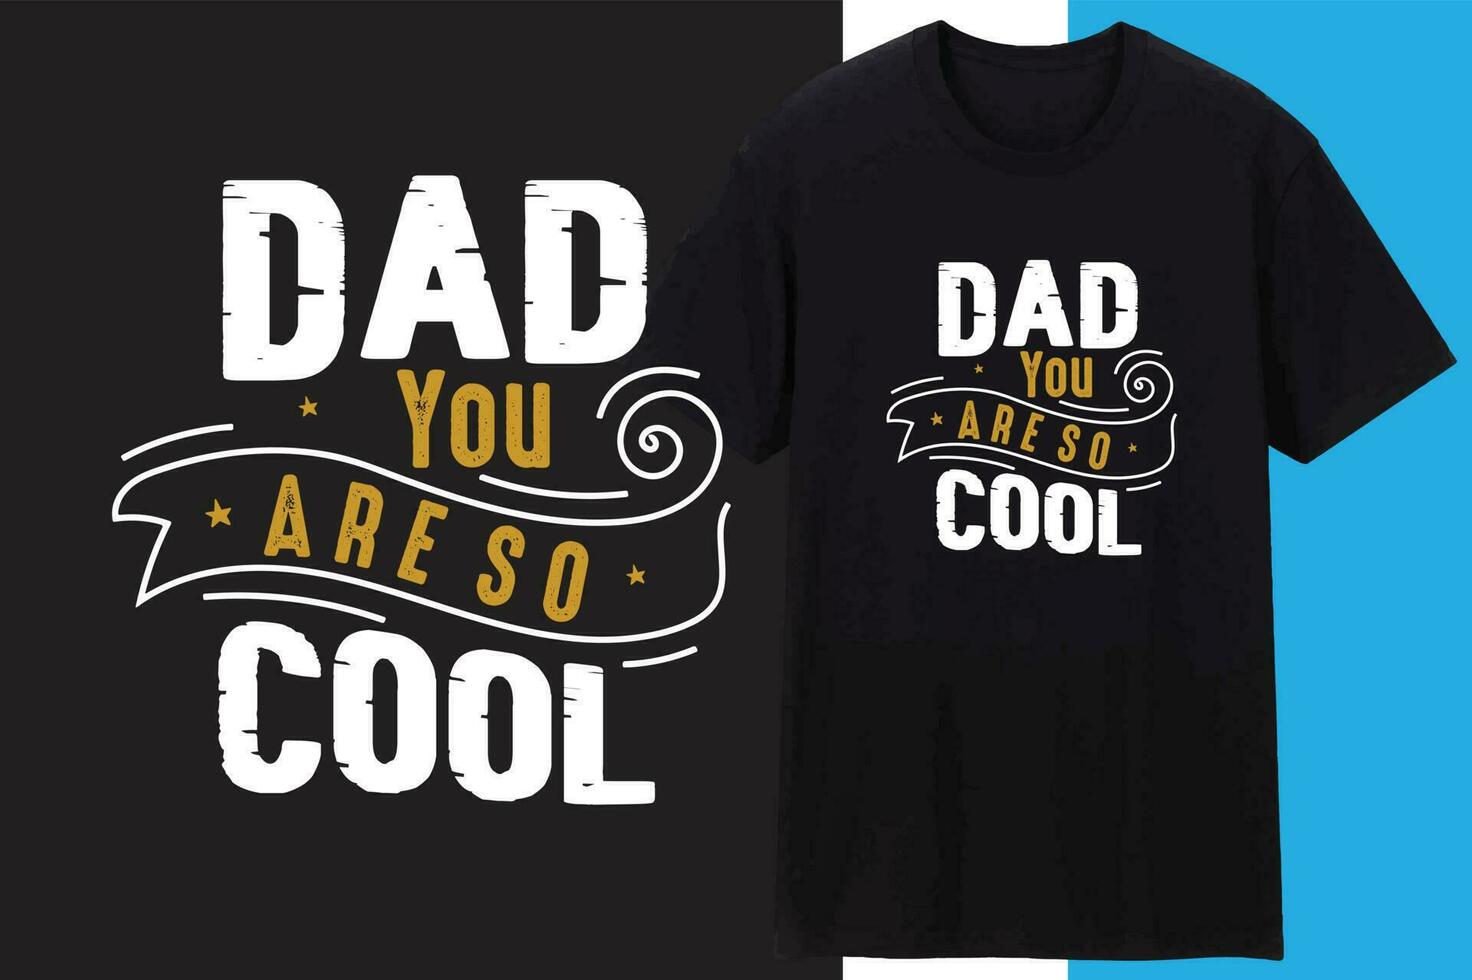 padre o papá t camisa diseño , tipografía diseño vector